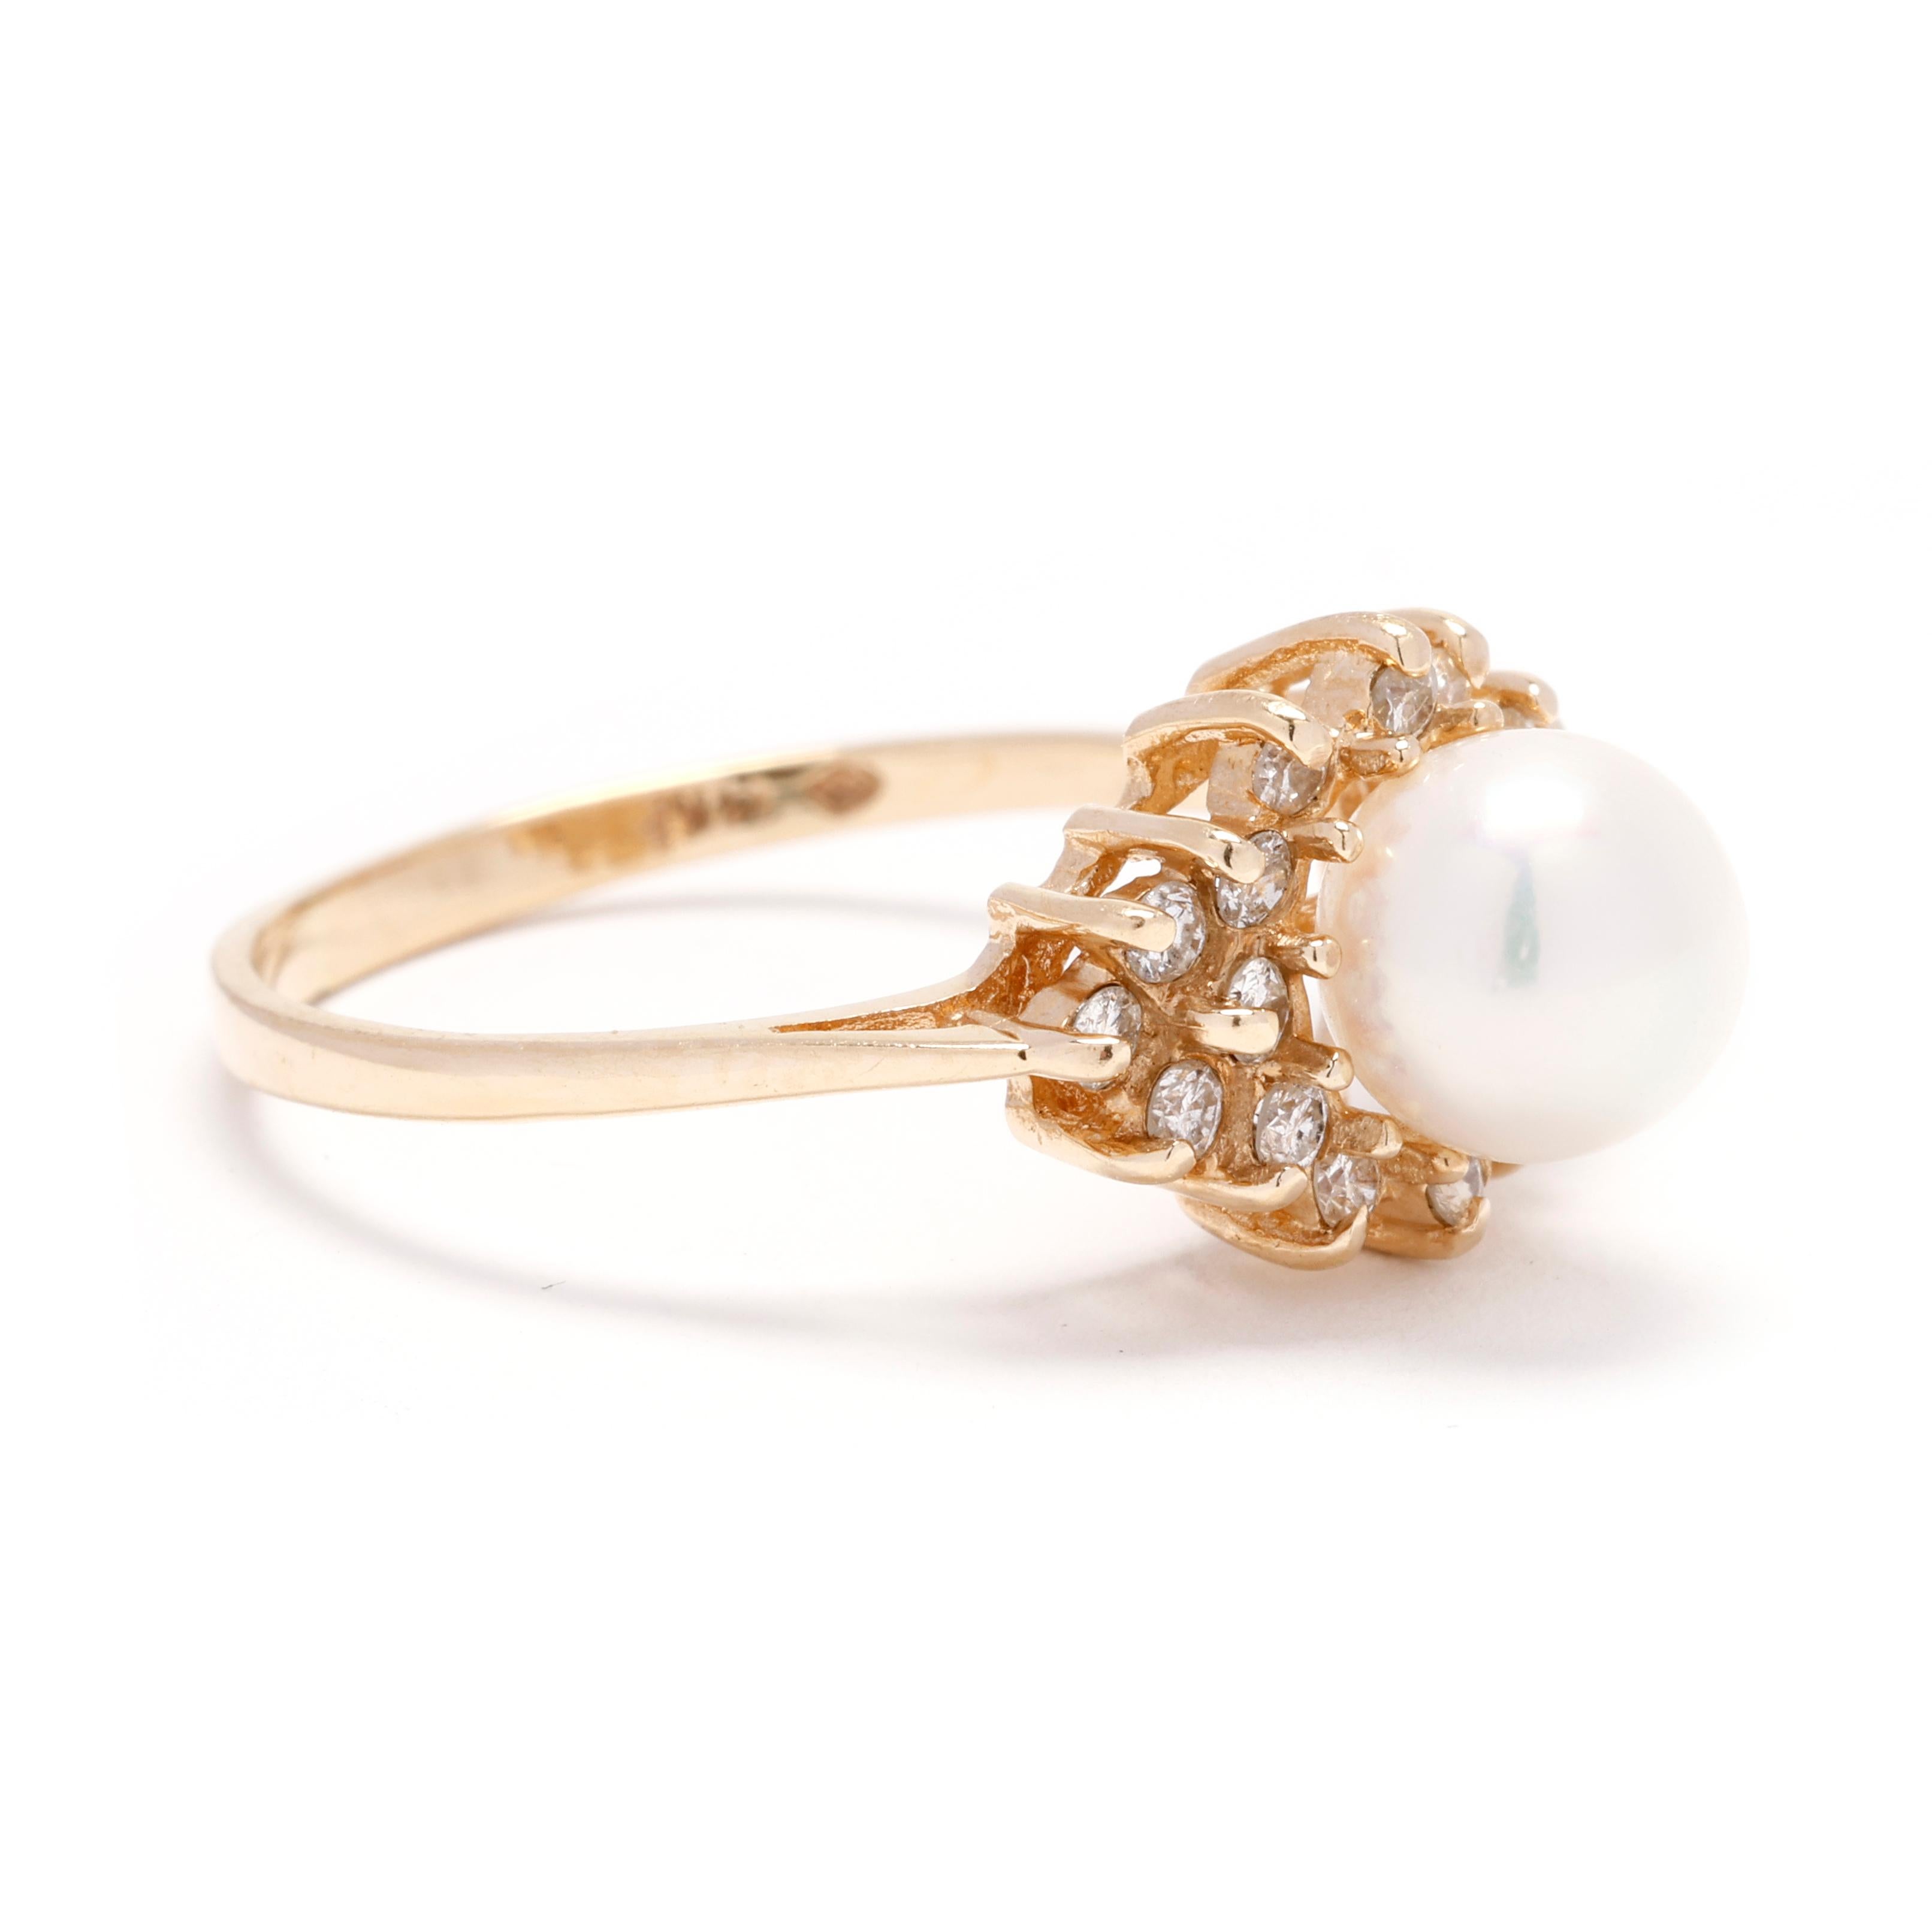 Erhöhen Sie Ihre Eleganz mit diesem exquisiten 0,25-karätigen Diamant-Perlen-Cluster-Ring. Dieser atemberaubende Ring aus glänzendem 14-karätigem Gelbgold besteht aus einer Gruppe funkelnder runder Brillanten, die eine schimmernde Perle elegant